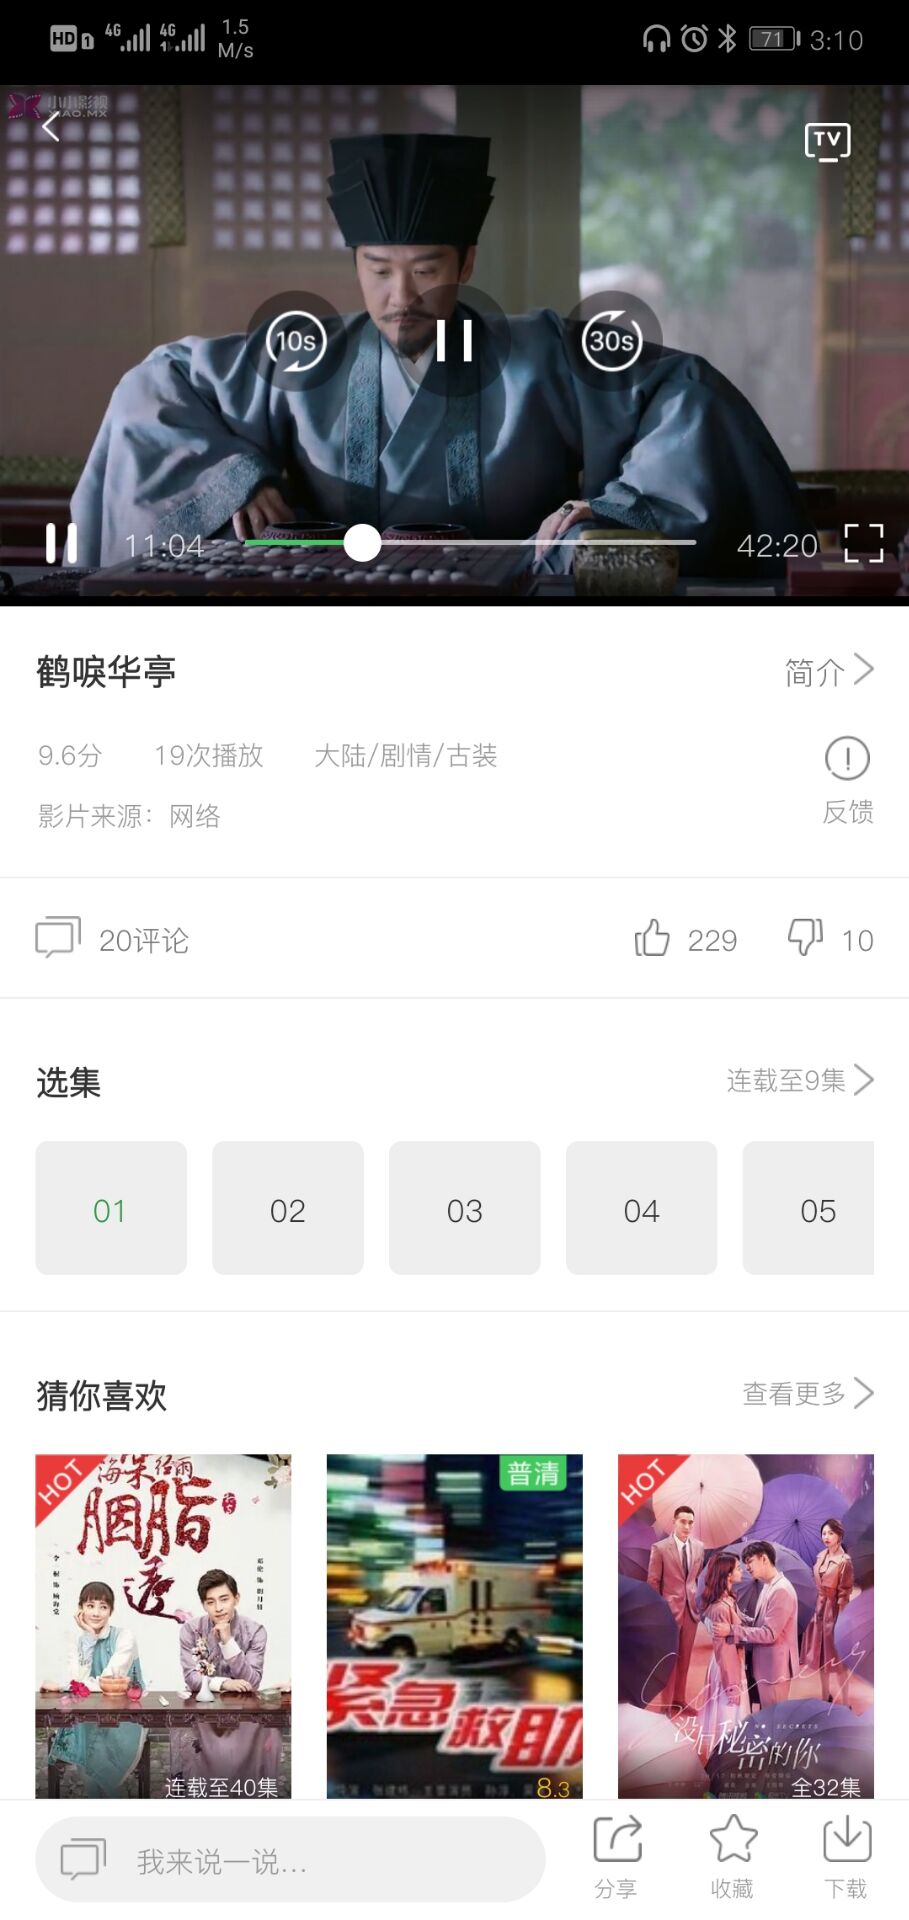 中国教育电视台四频道直播平台 v1.0.0截图